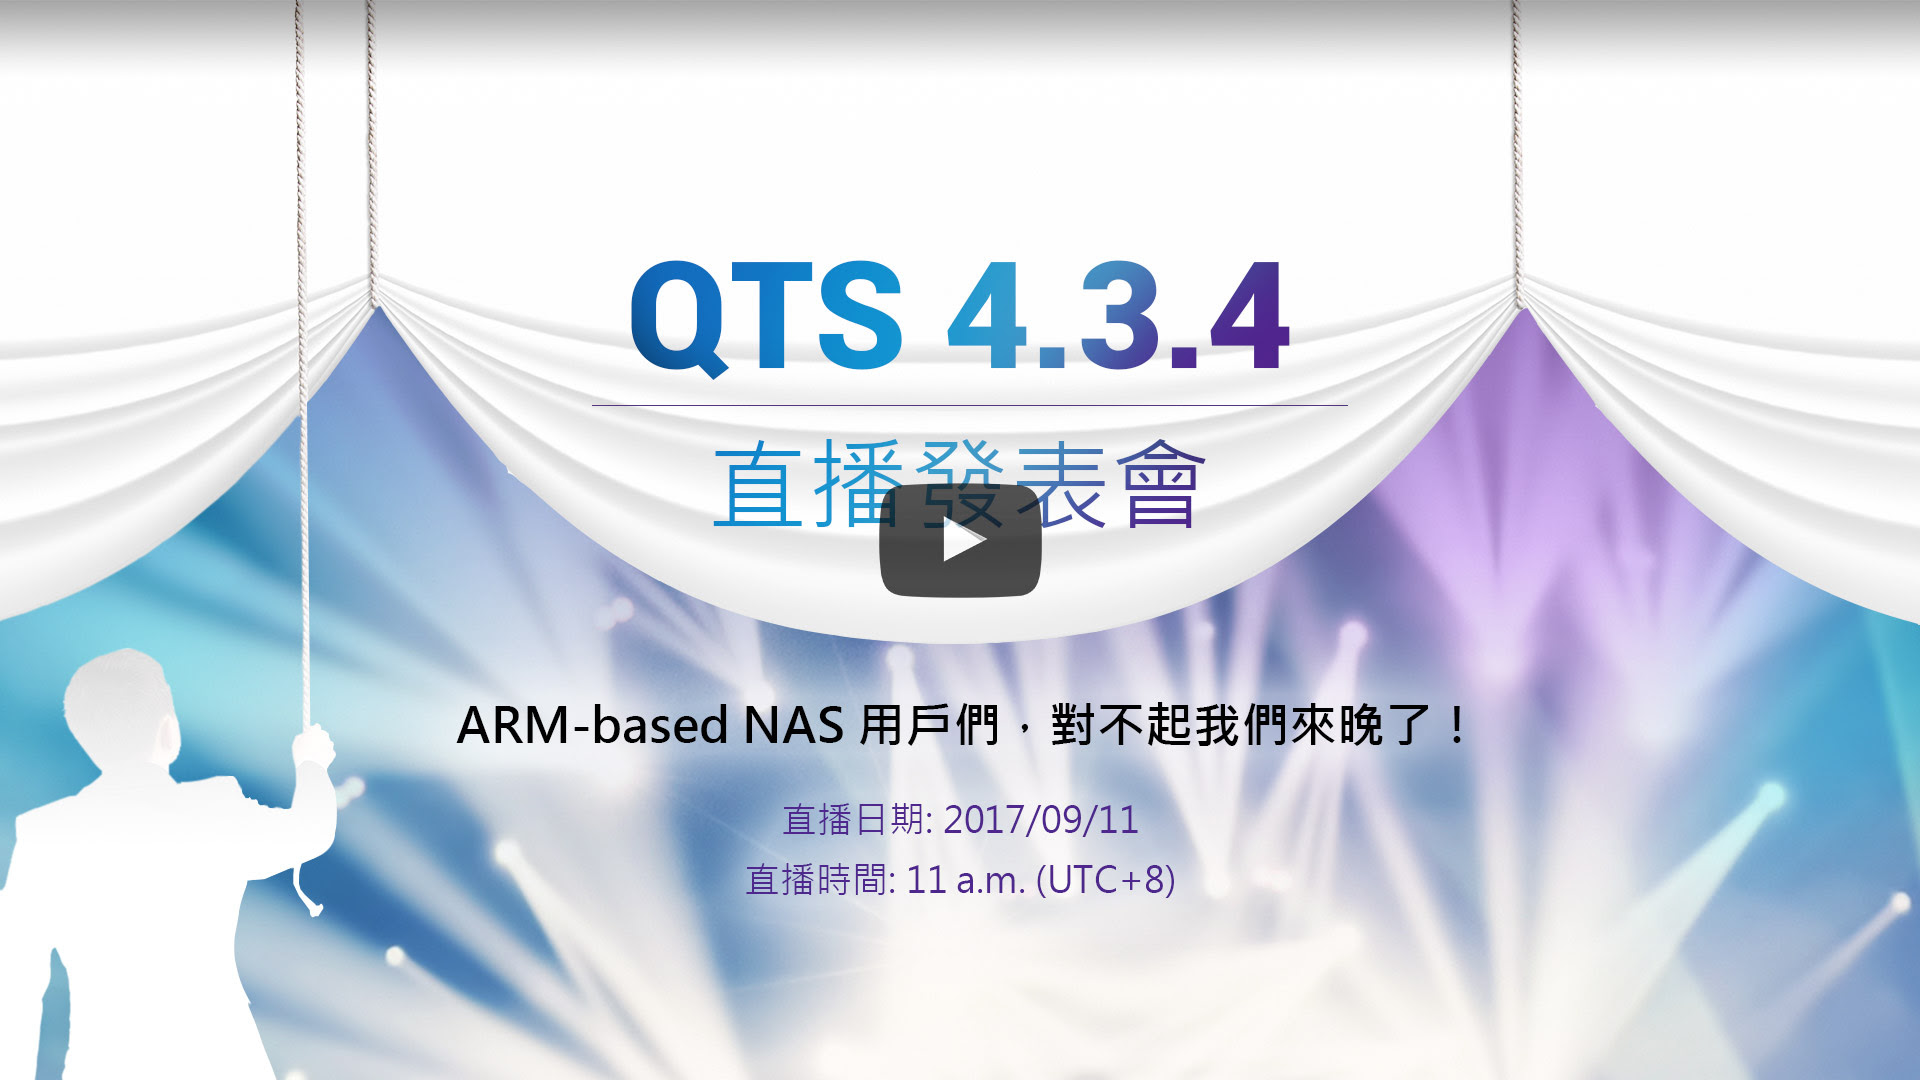 Live QTS 4.3.4 Presentation